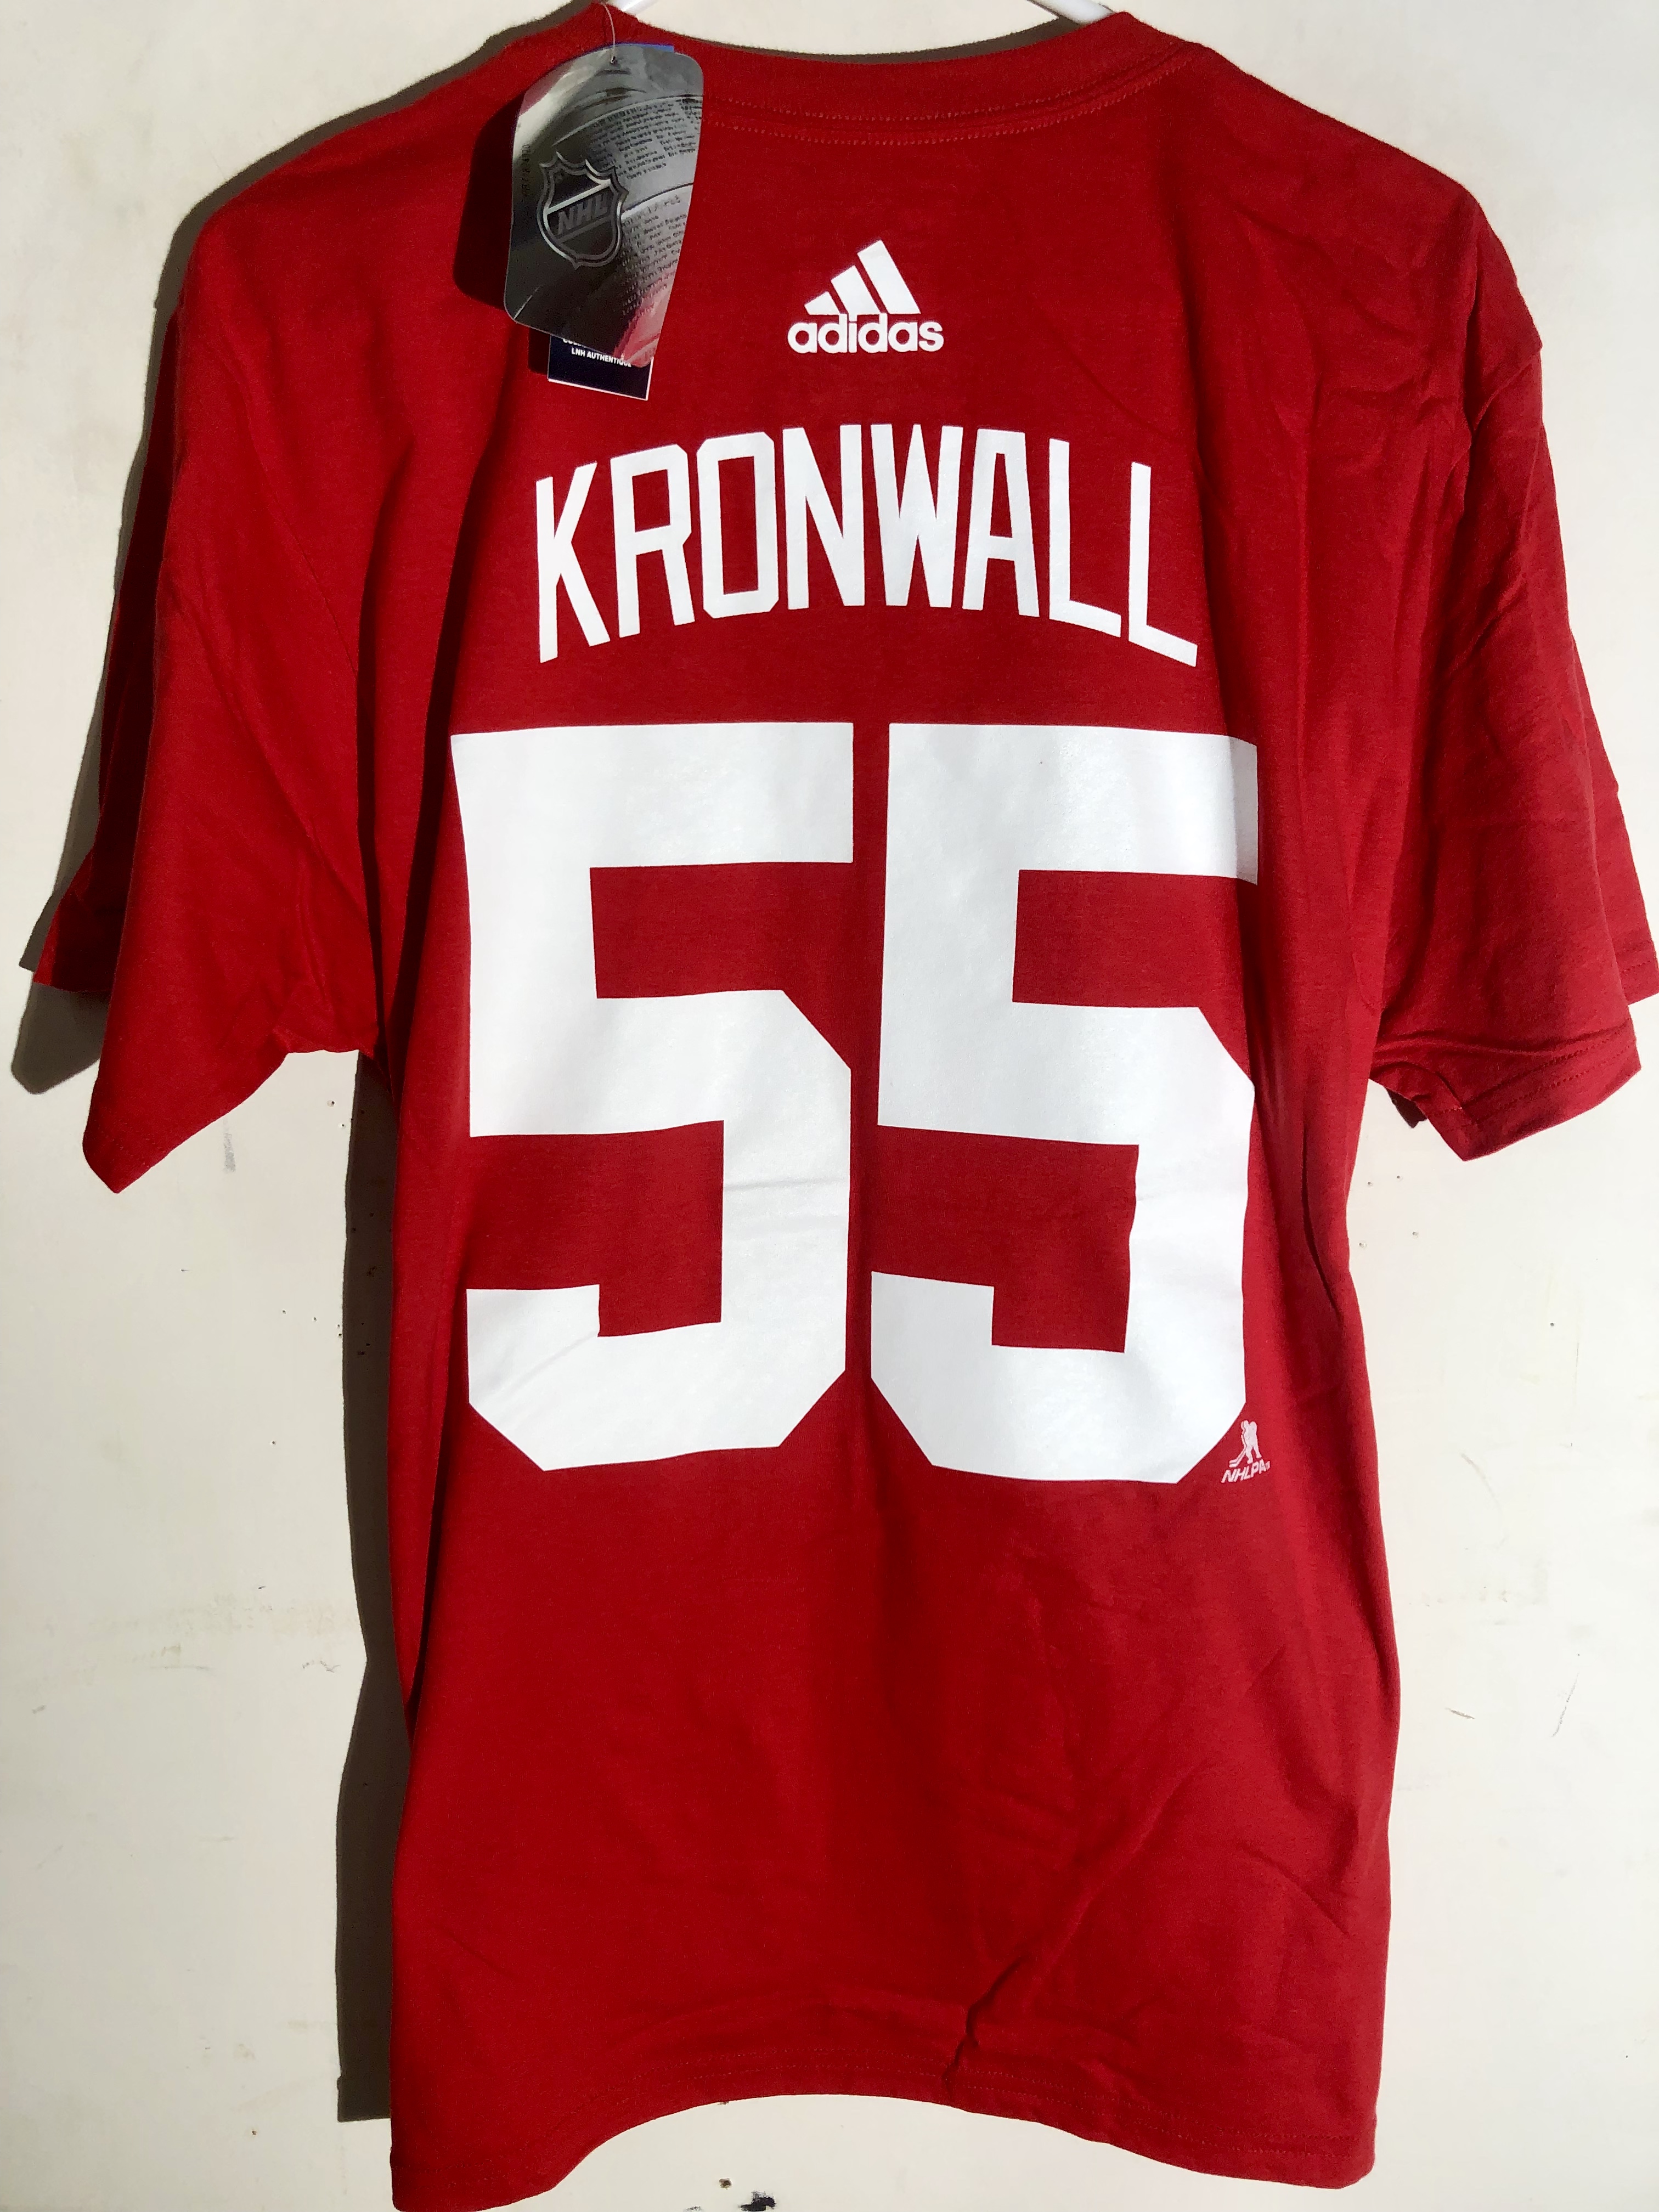 kronwall shirt